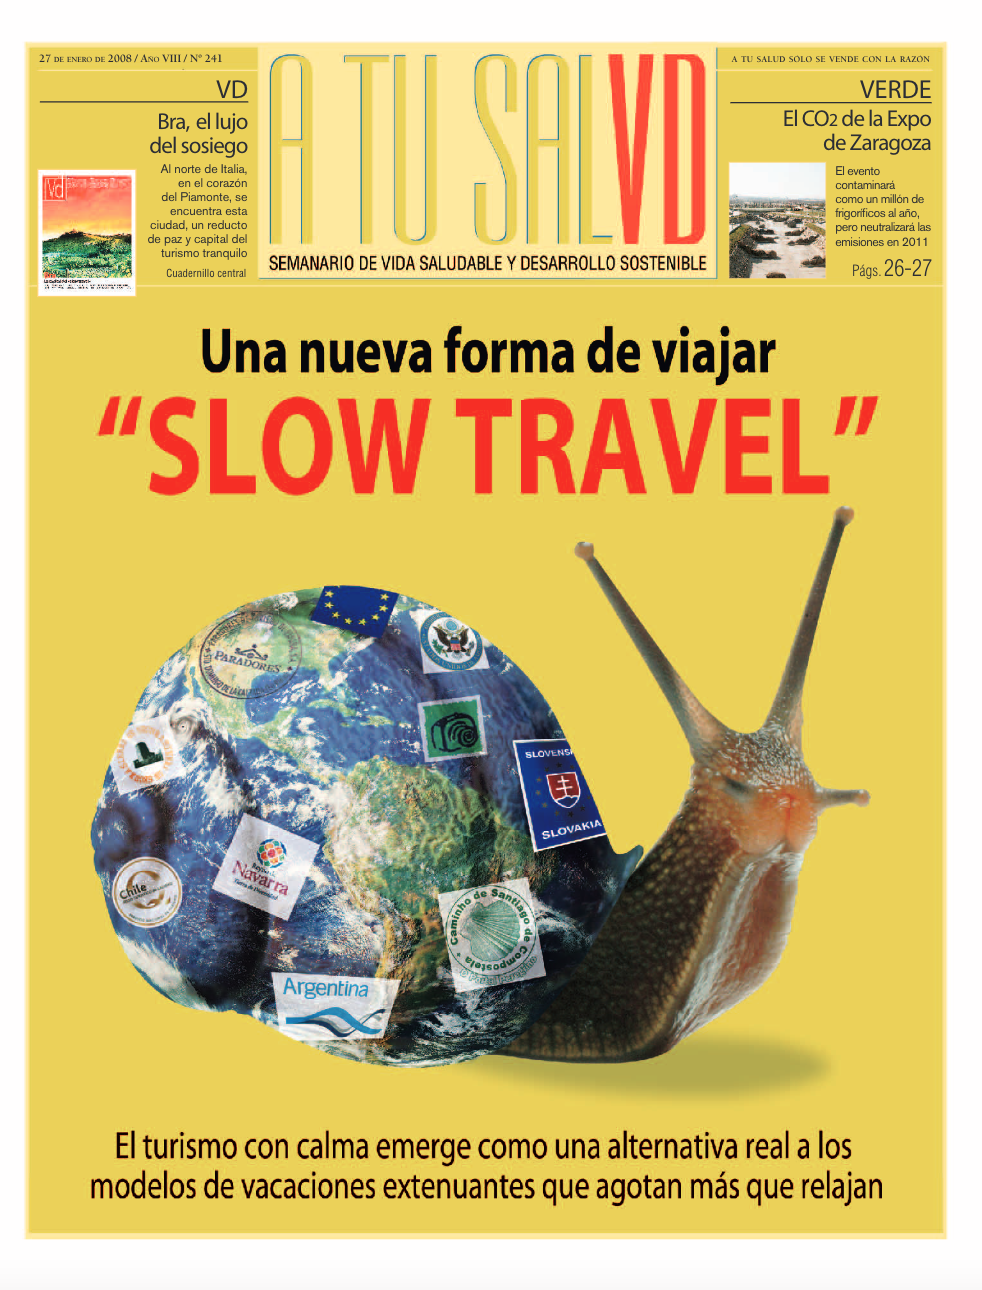 2008: el Slow Travel